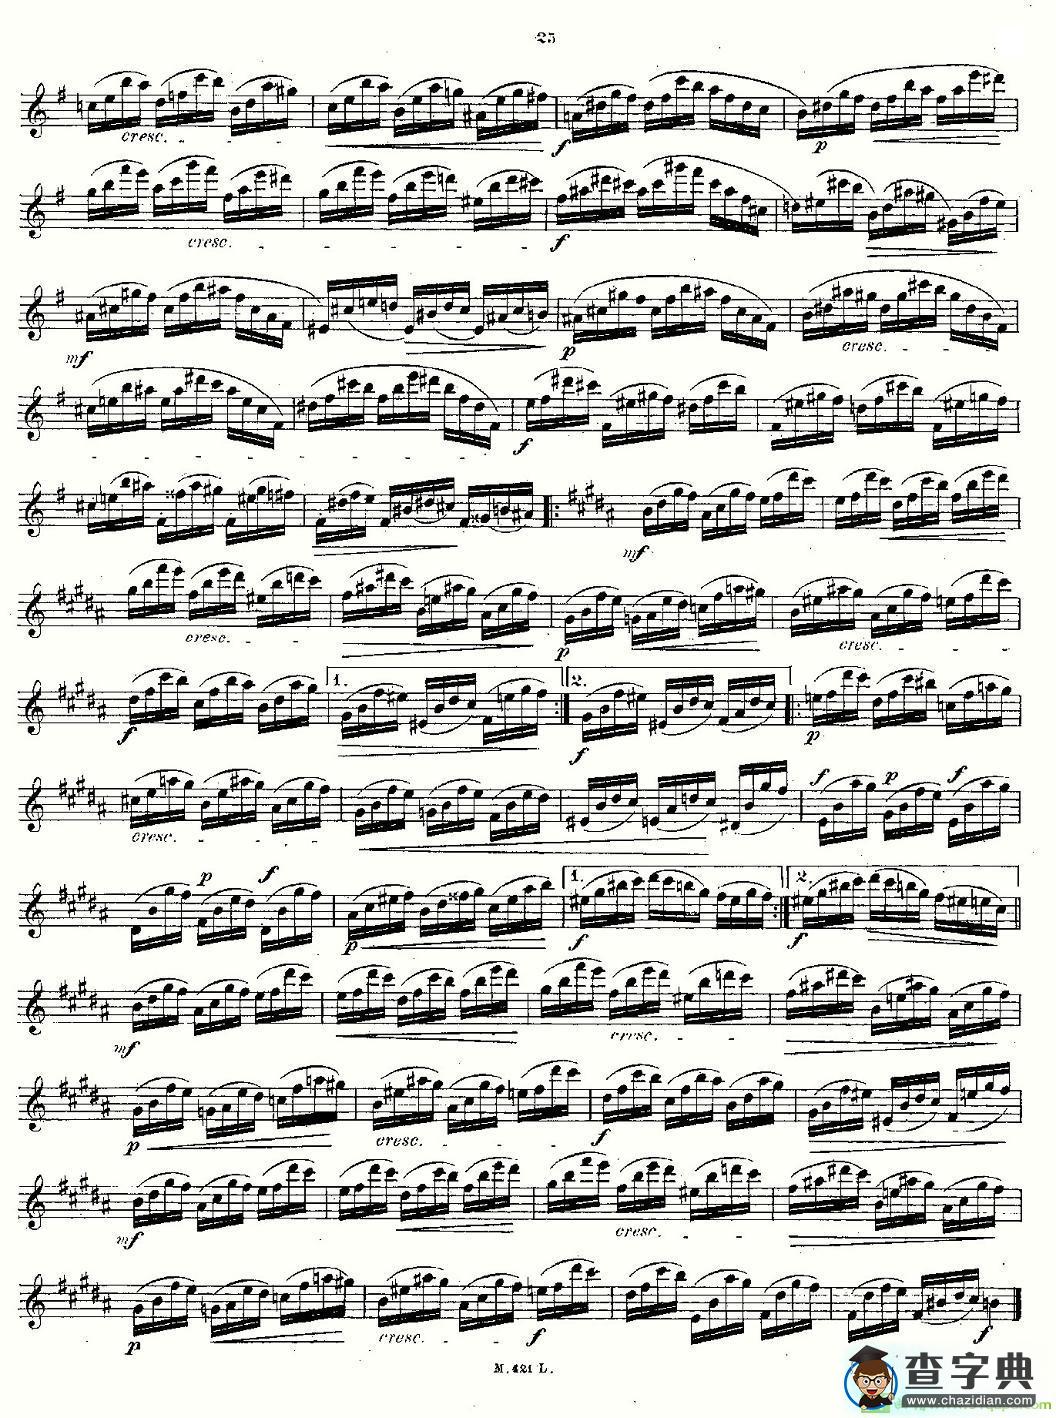 24首长笛练习曲 Op.15 之11—15长笛谱(Andersen作曲)